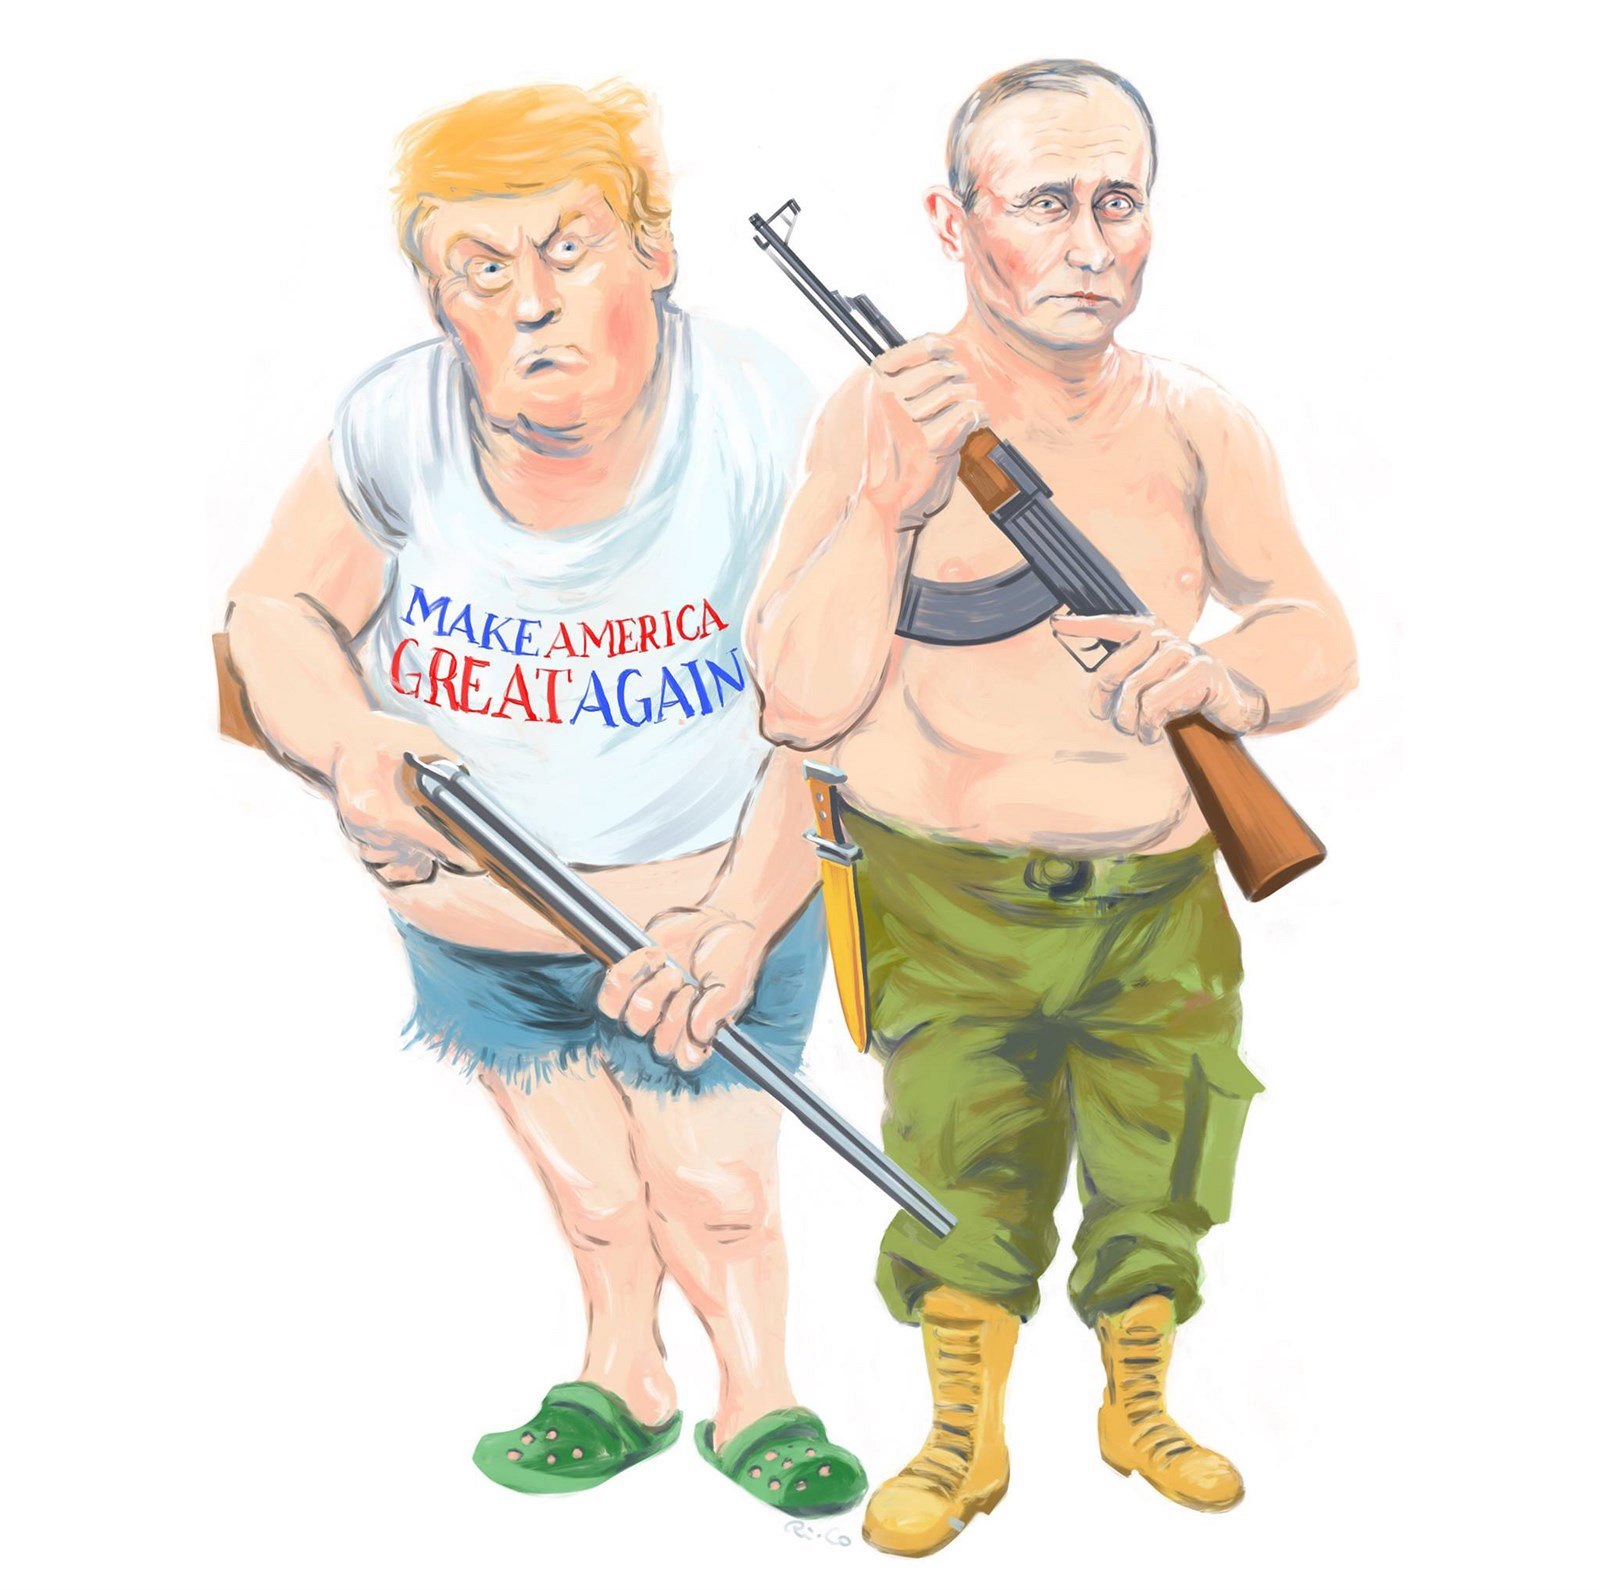 Donald Trump a Vladimir Putin.